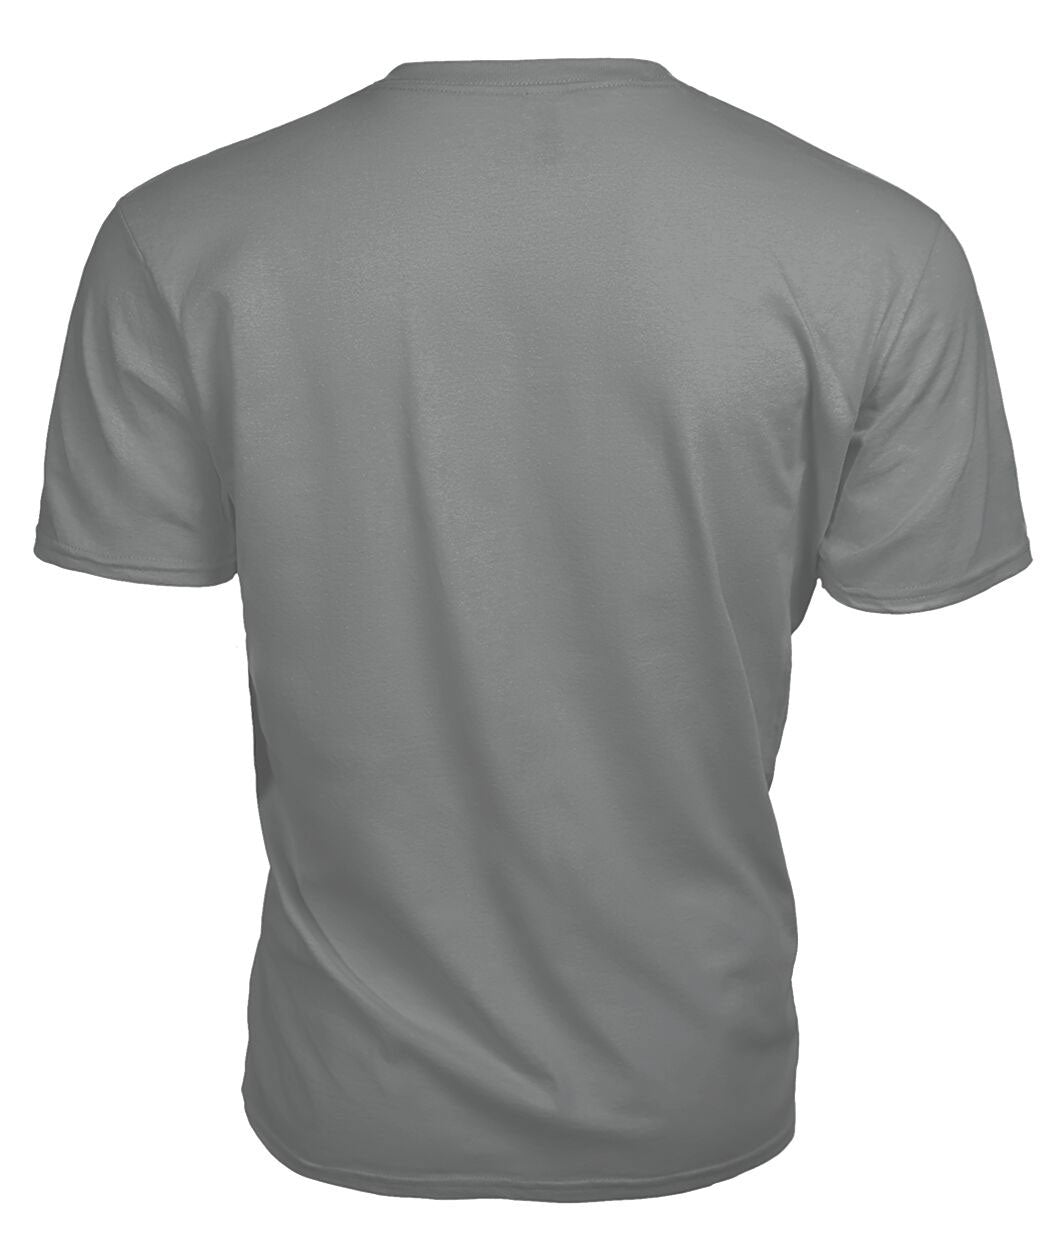 Aikenhead Tartan Crest 2D T-shirt - Blood Runs Through My Veins Style